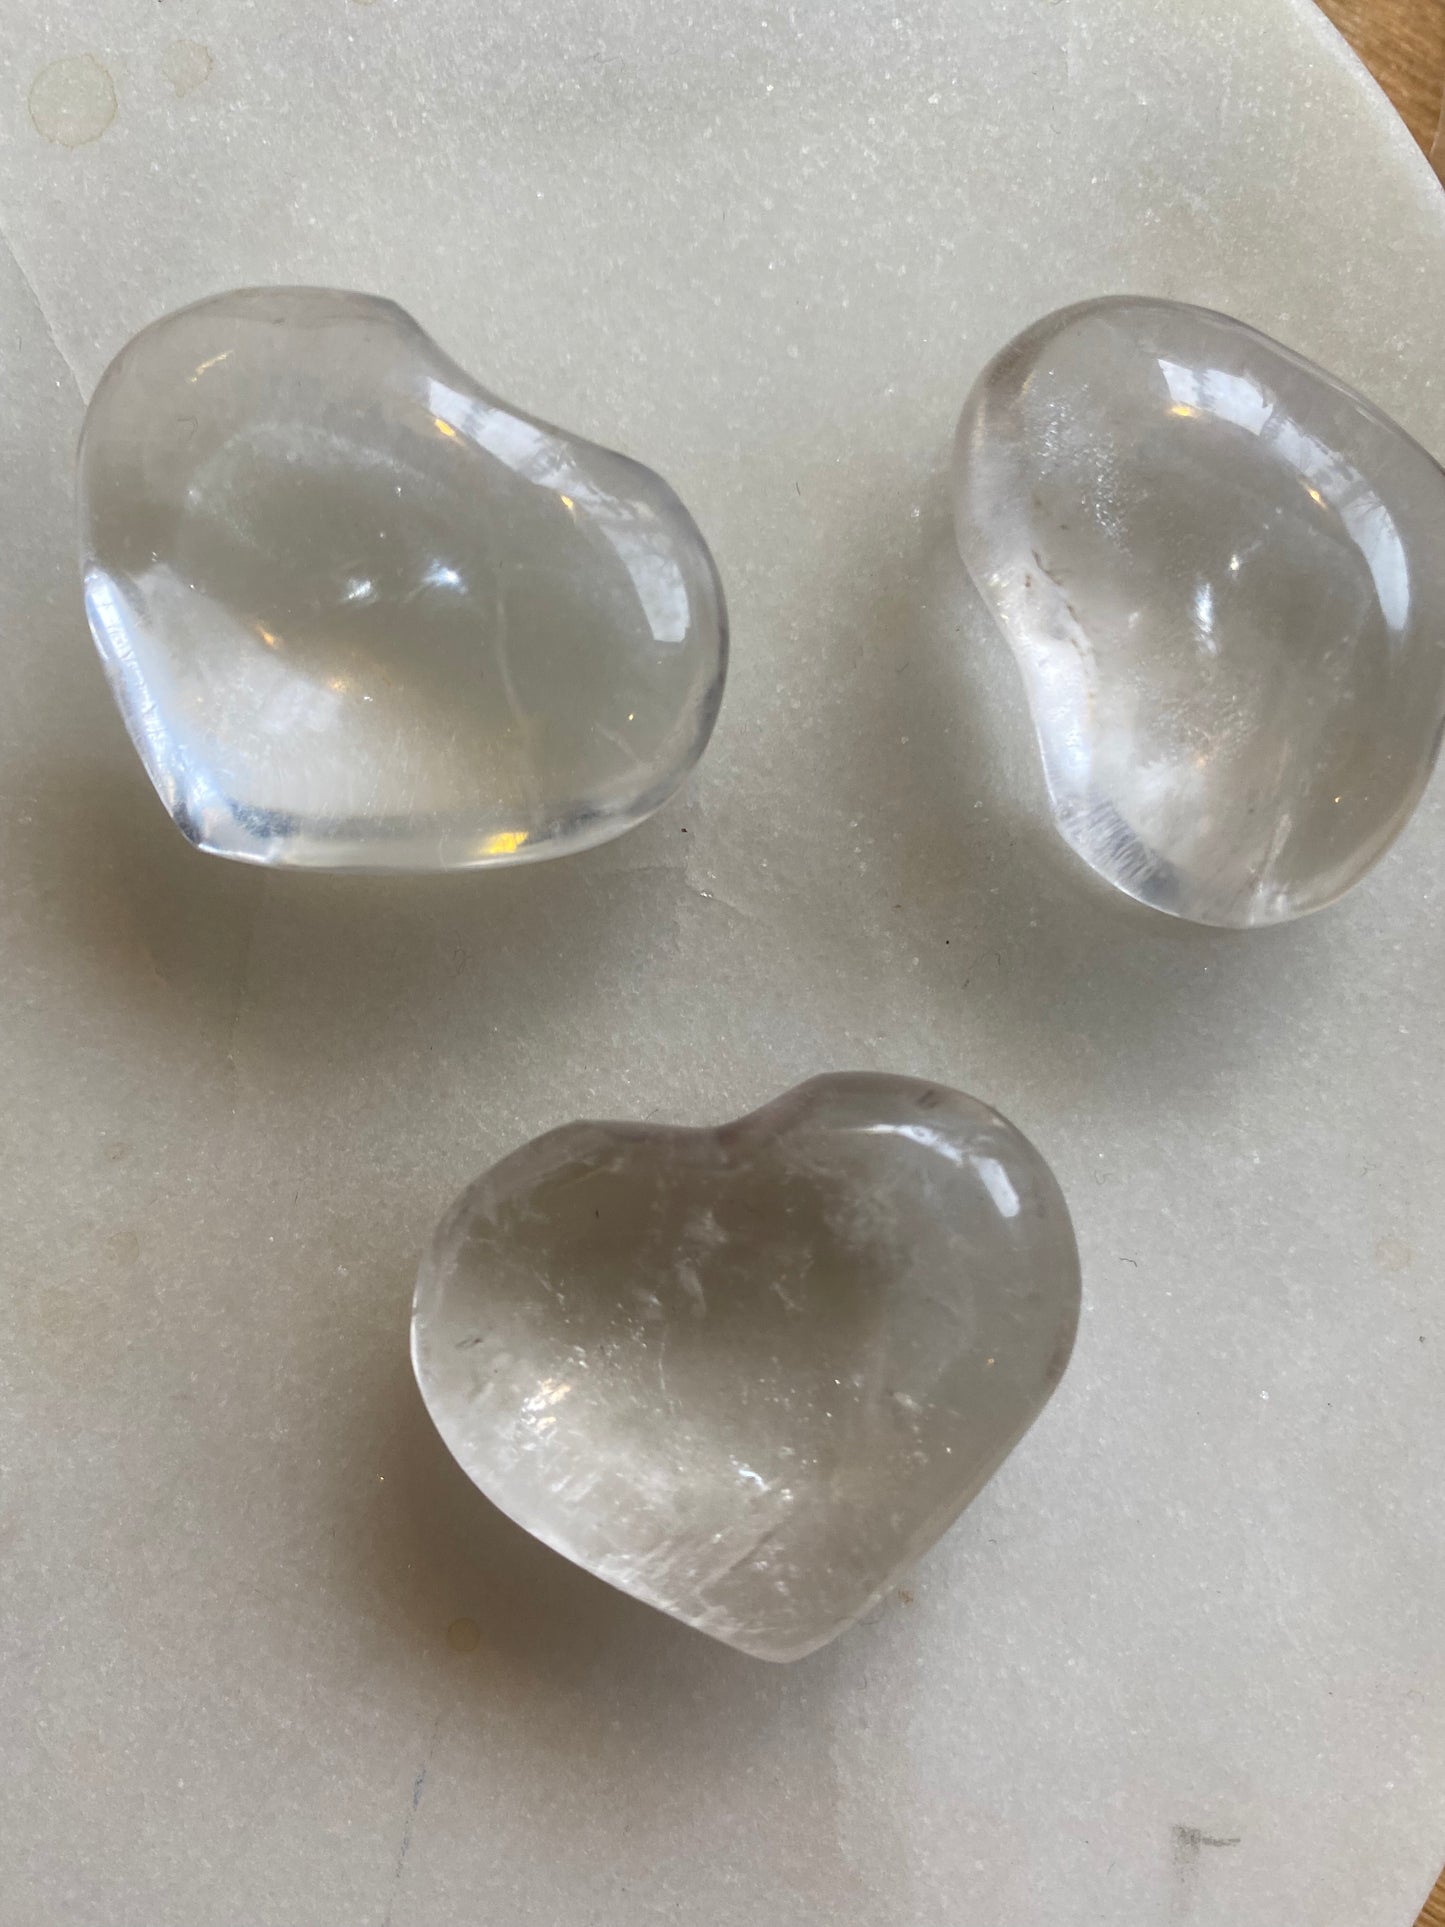 Quartz Crystal Hearts